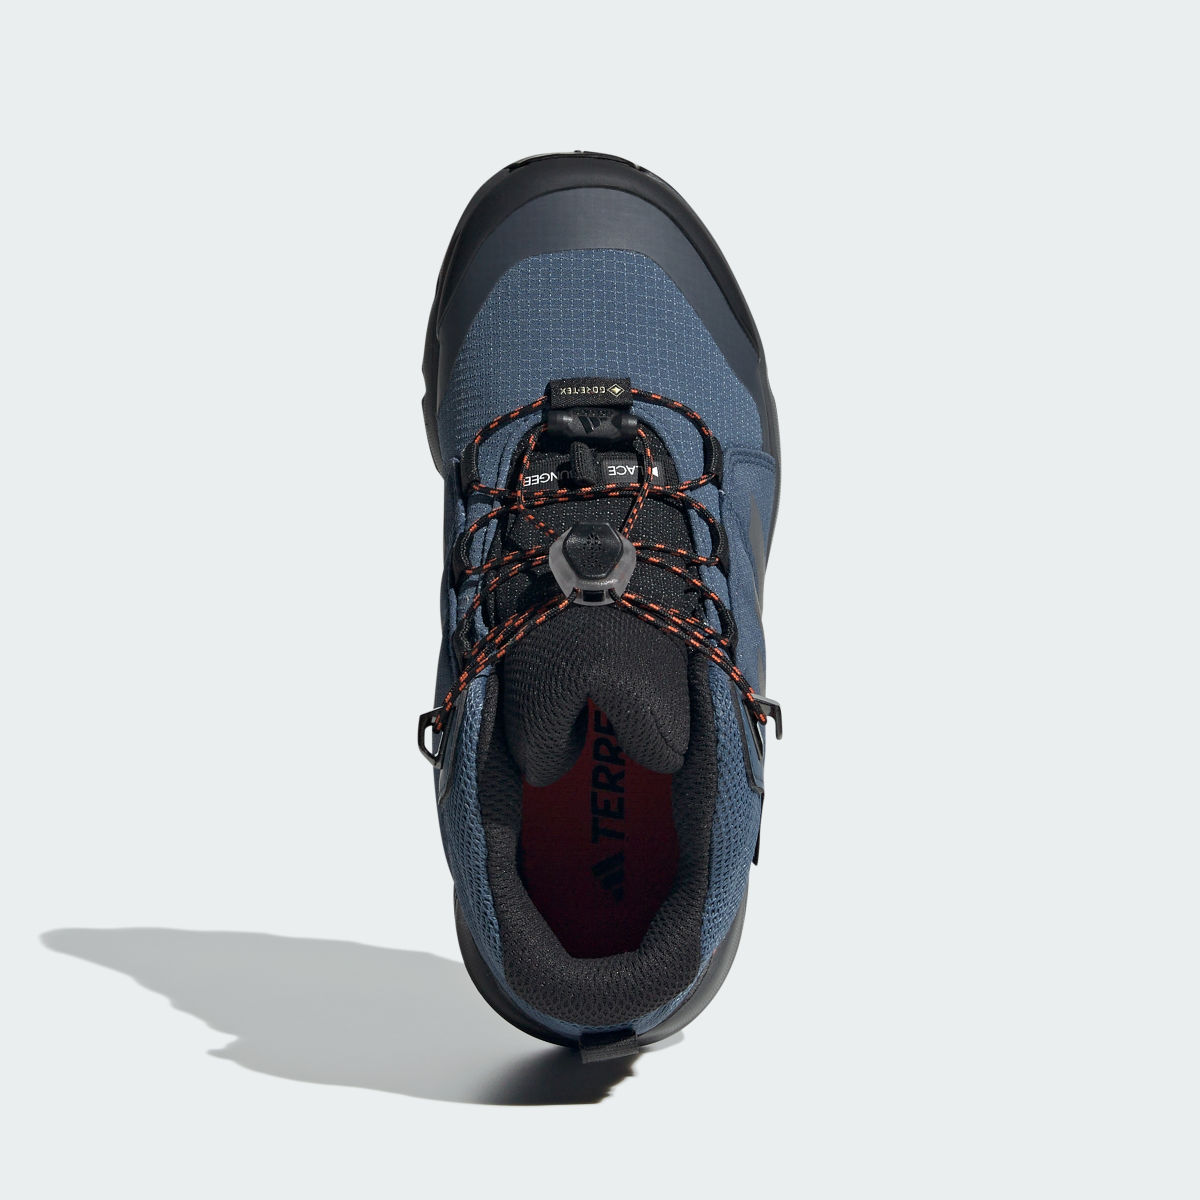 Adidas Sapatilhas de Caminhada GORE-TEX Organiser Mid. 4